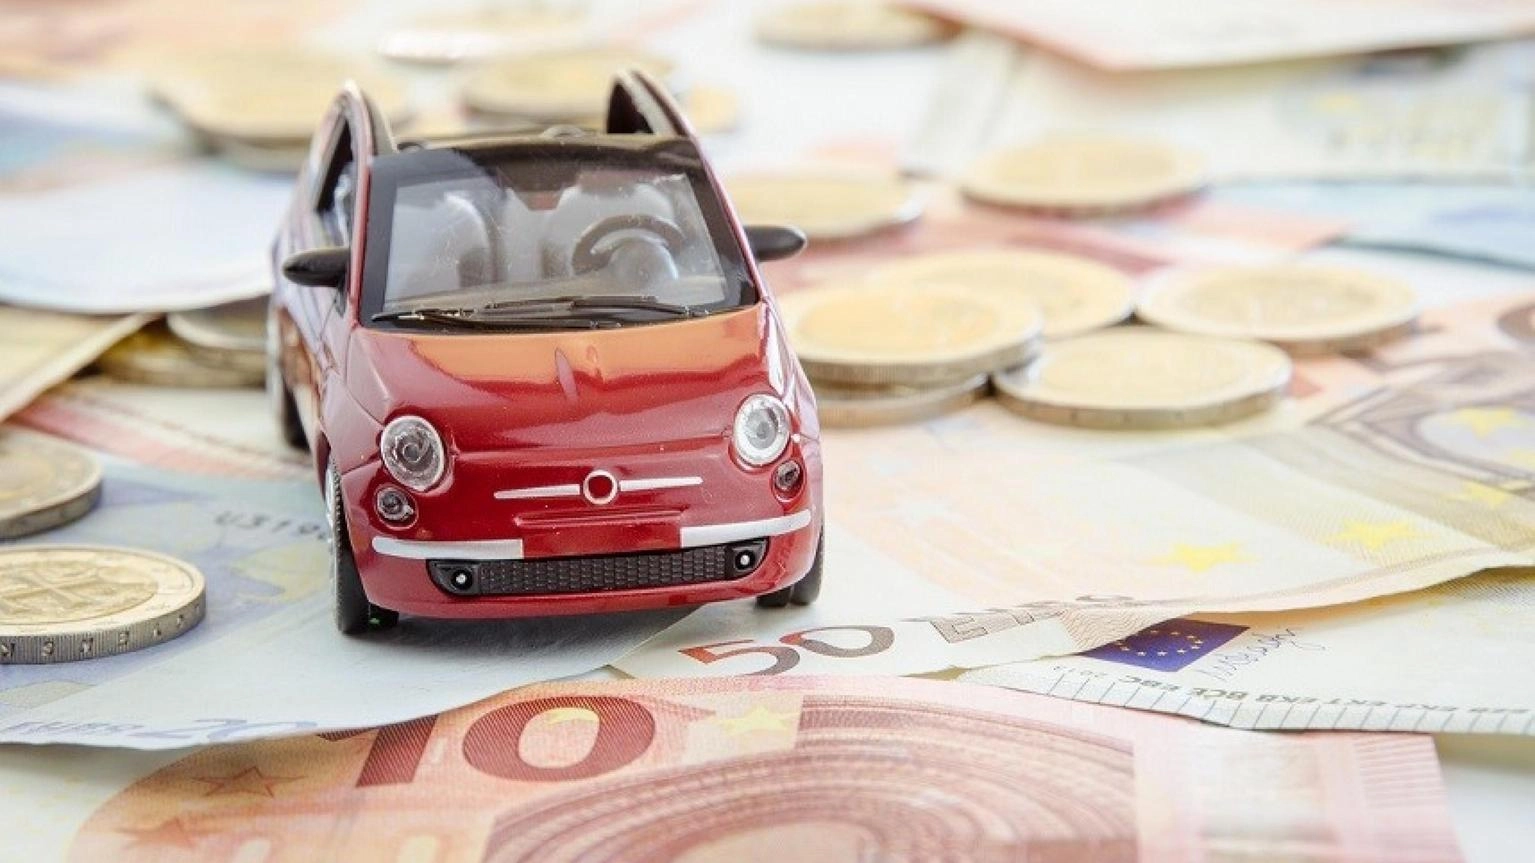 A giugno il prezzo medio dell'rc auto sale a 403 euro